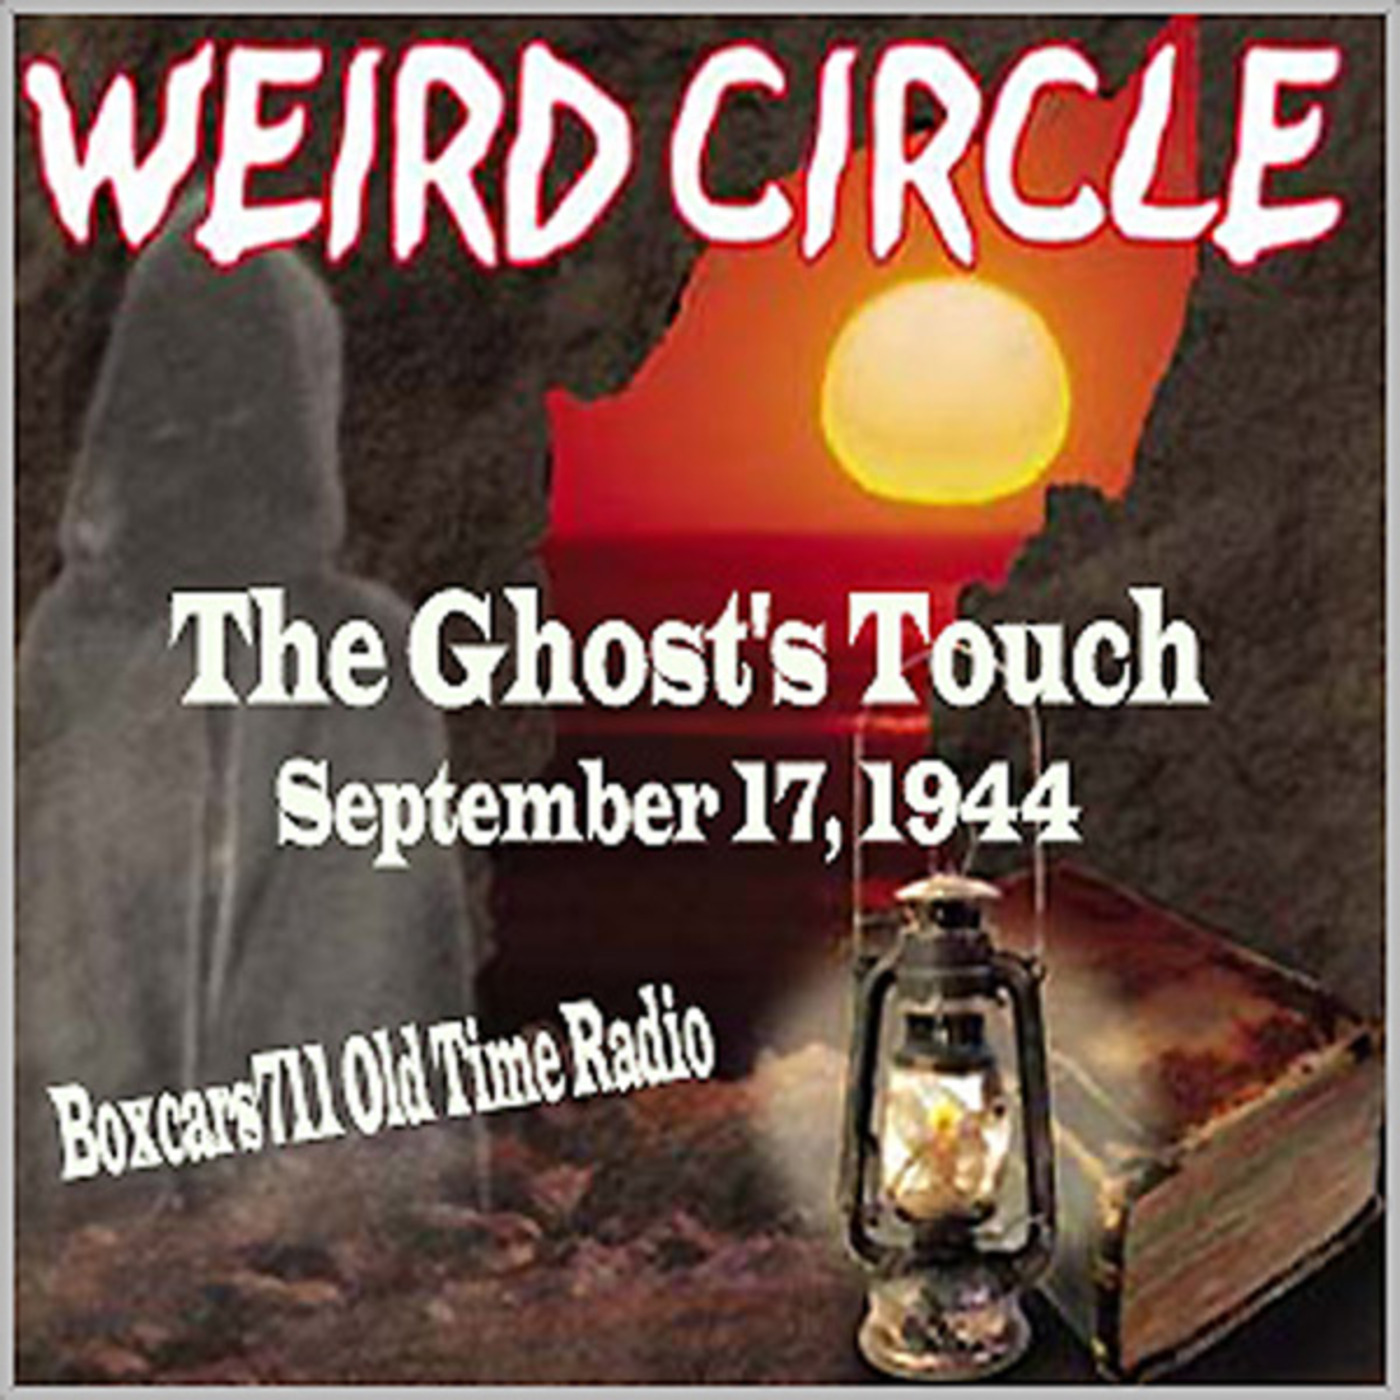 Episode 9437: The Weird Circle - 